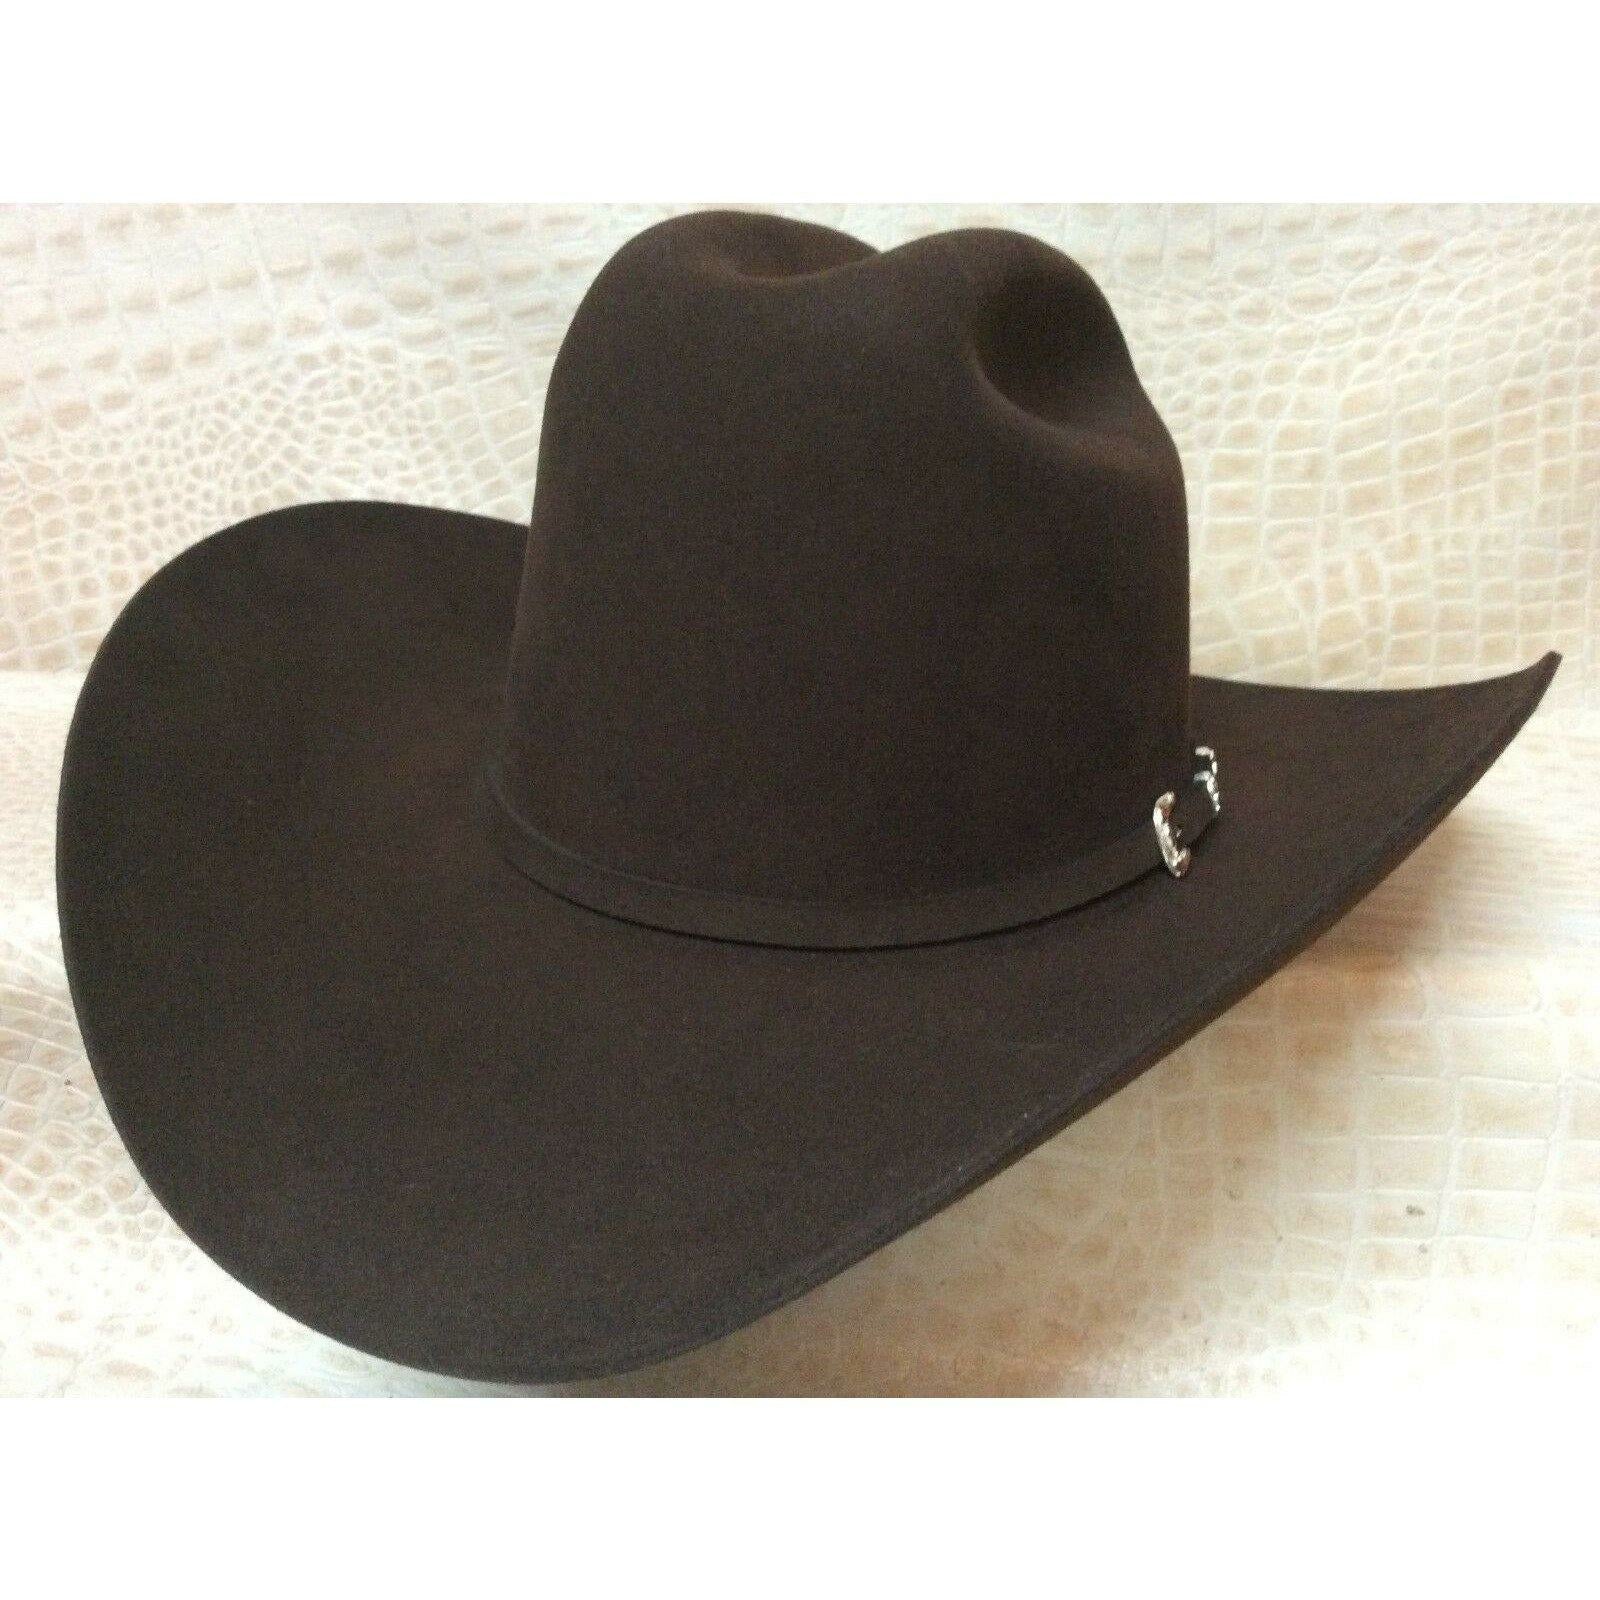 30X Stetson El Patron Chocolate Brown Beaver Fur Felt Western Cowboy Hat - CWesternwear